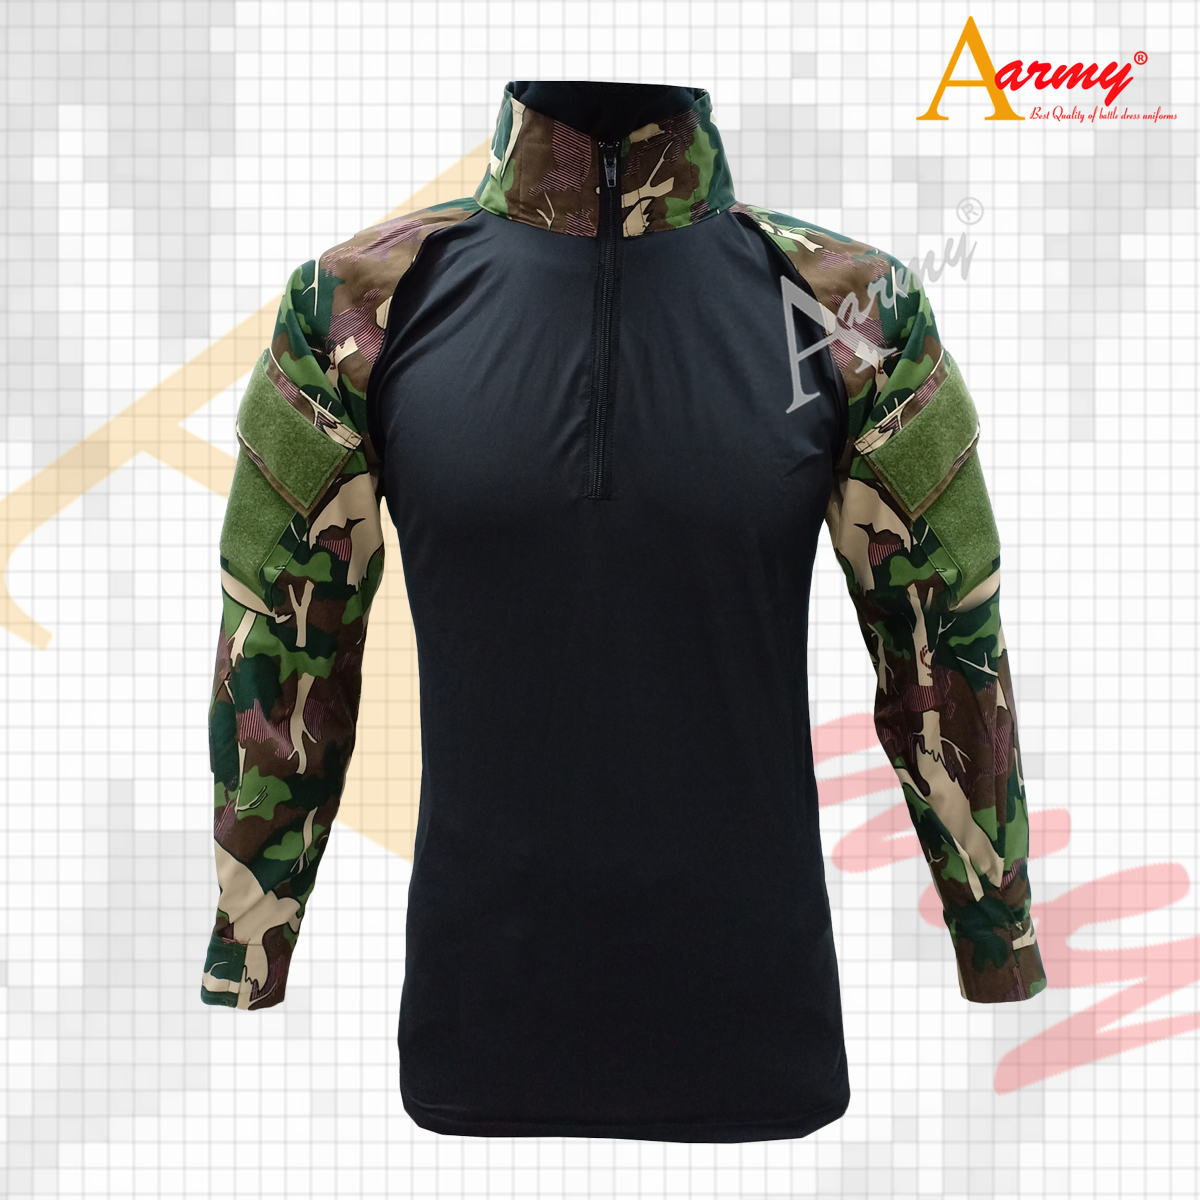 Combat Shirt สีดำ ลายป่าไม้พิมพ์น้ำ รุ่น1 / Combat Shirt ลำตัวดำ แขนลายป่าไม้พิมพ์น้ำ รุ่น1